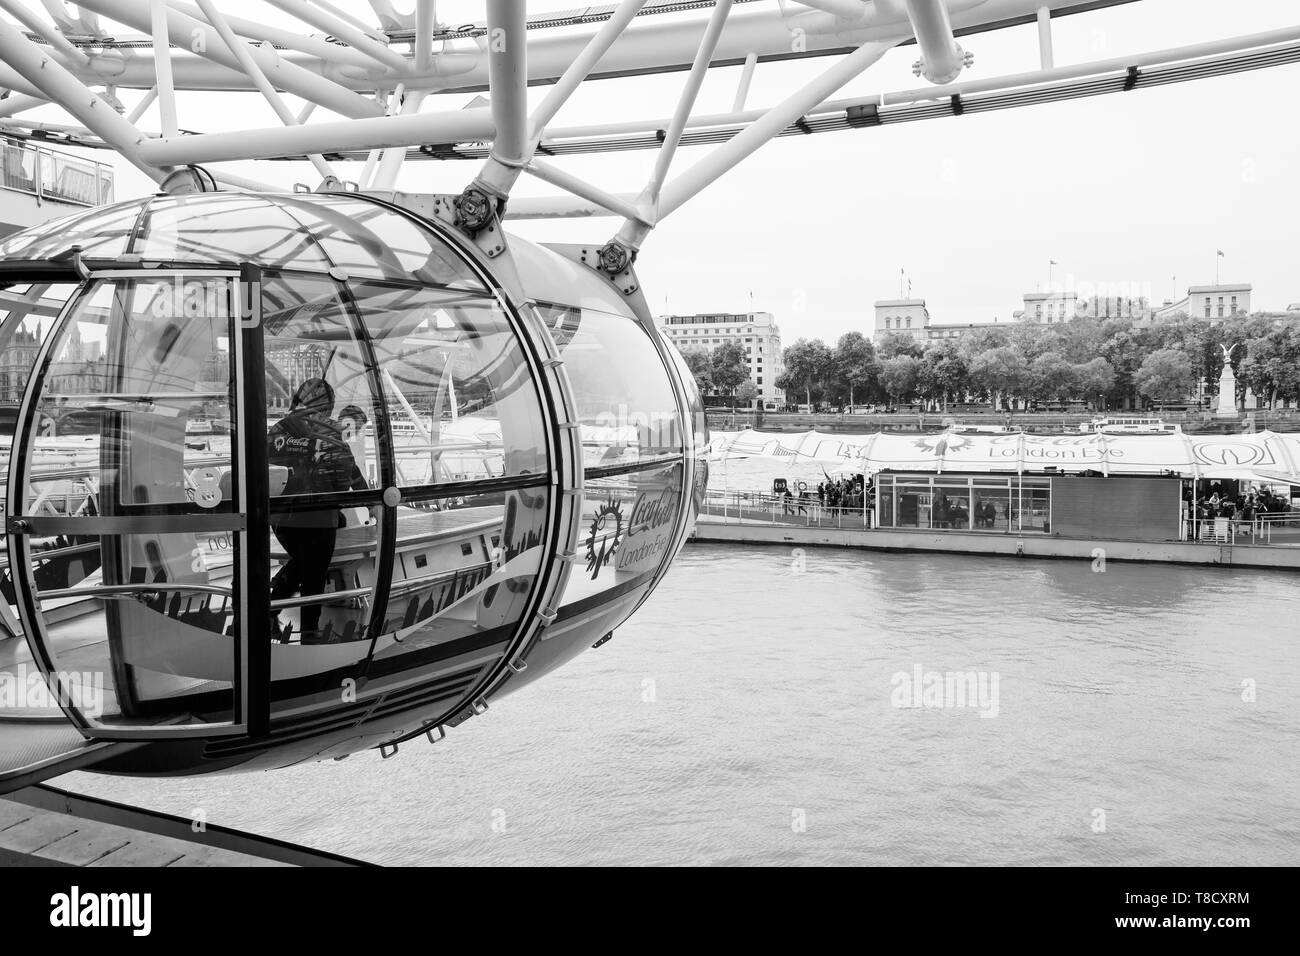 Londres, Royaume-Uni - 31 octobre 2017 : Les gens sont dans la cabine du London Eye (Grande roue montée sur la rive sud de la Tamise à Londres, b Banque D'Images